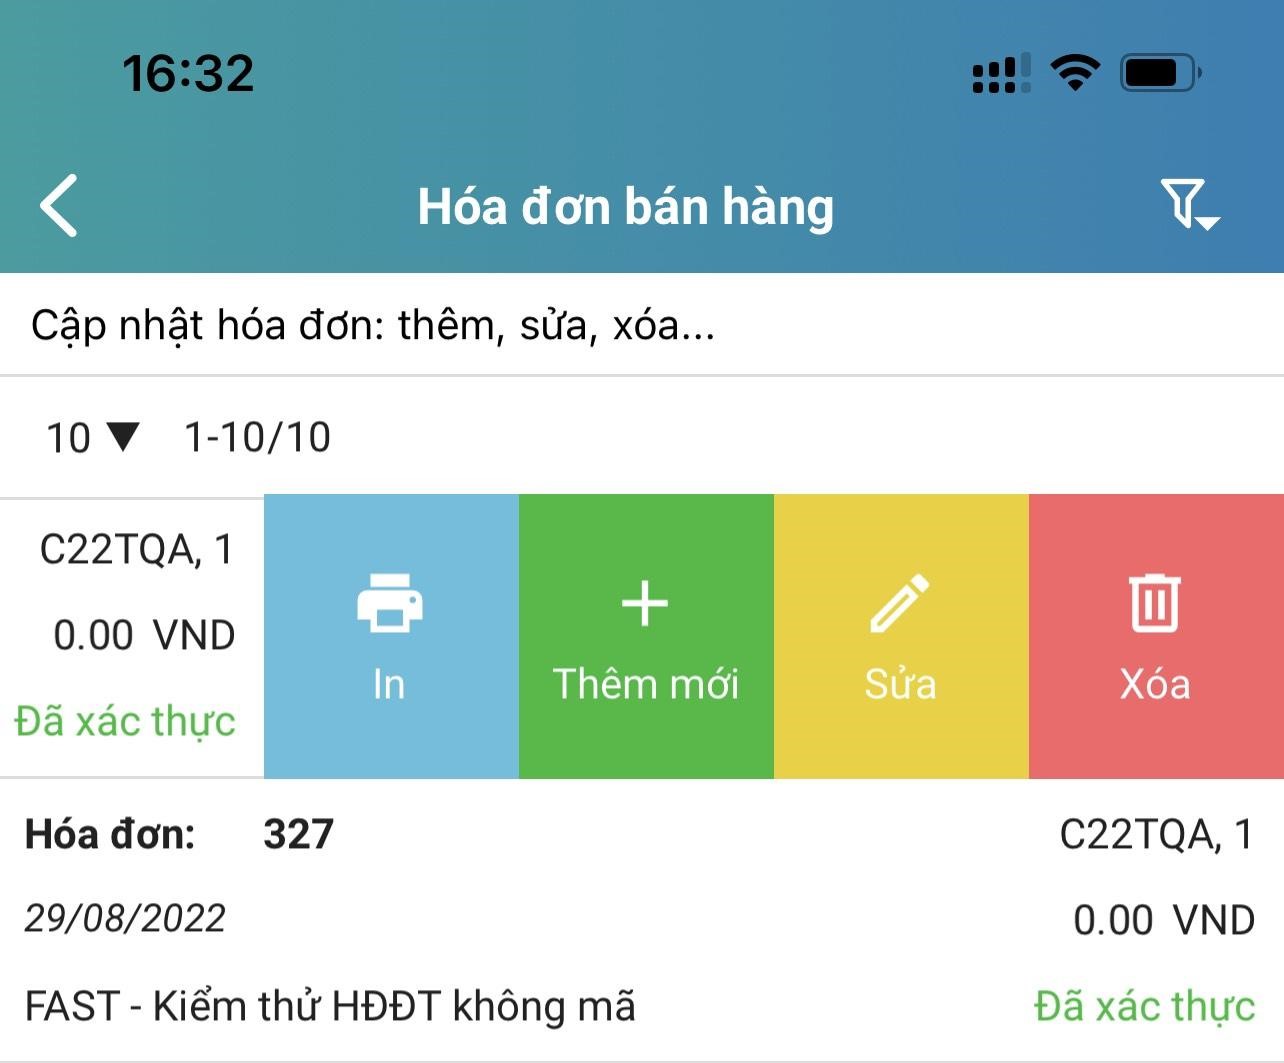 xoa-hd-mobile-app.jpg